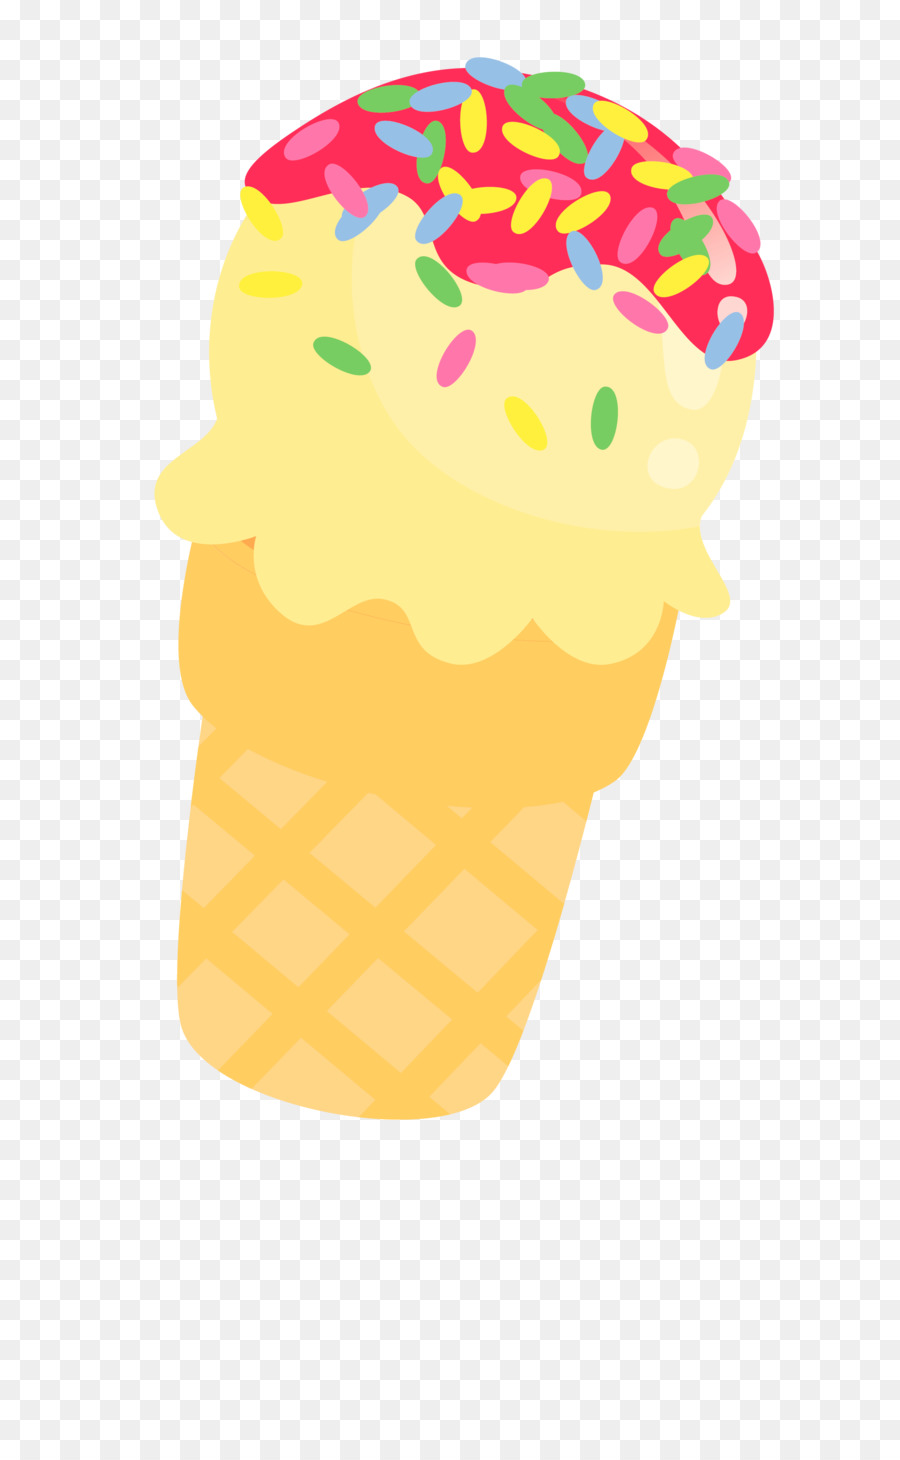 Ice Cream Cones Clip art Apple pie - ice cream png download - 2280*3650 - Free Transparent Ice Cream Cones png Download.